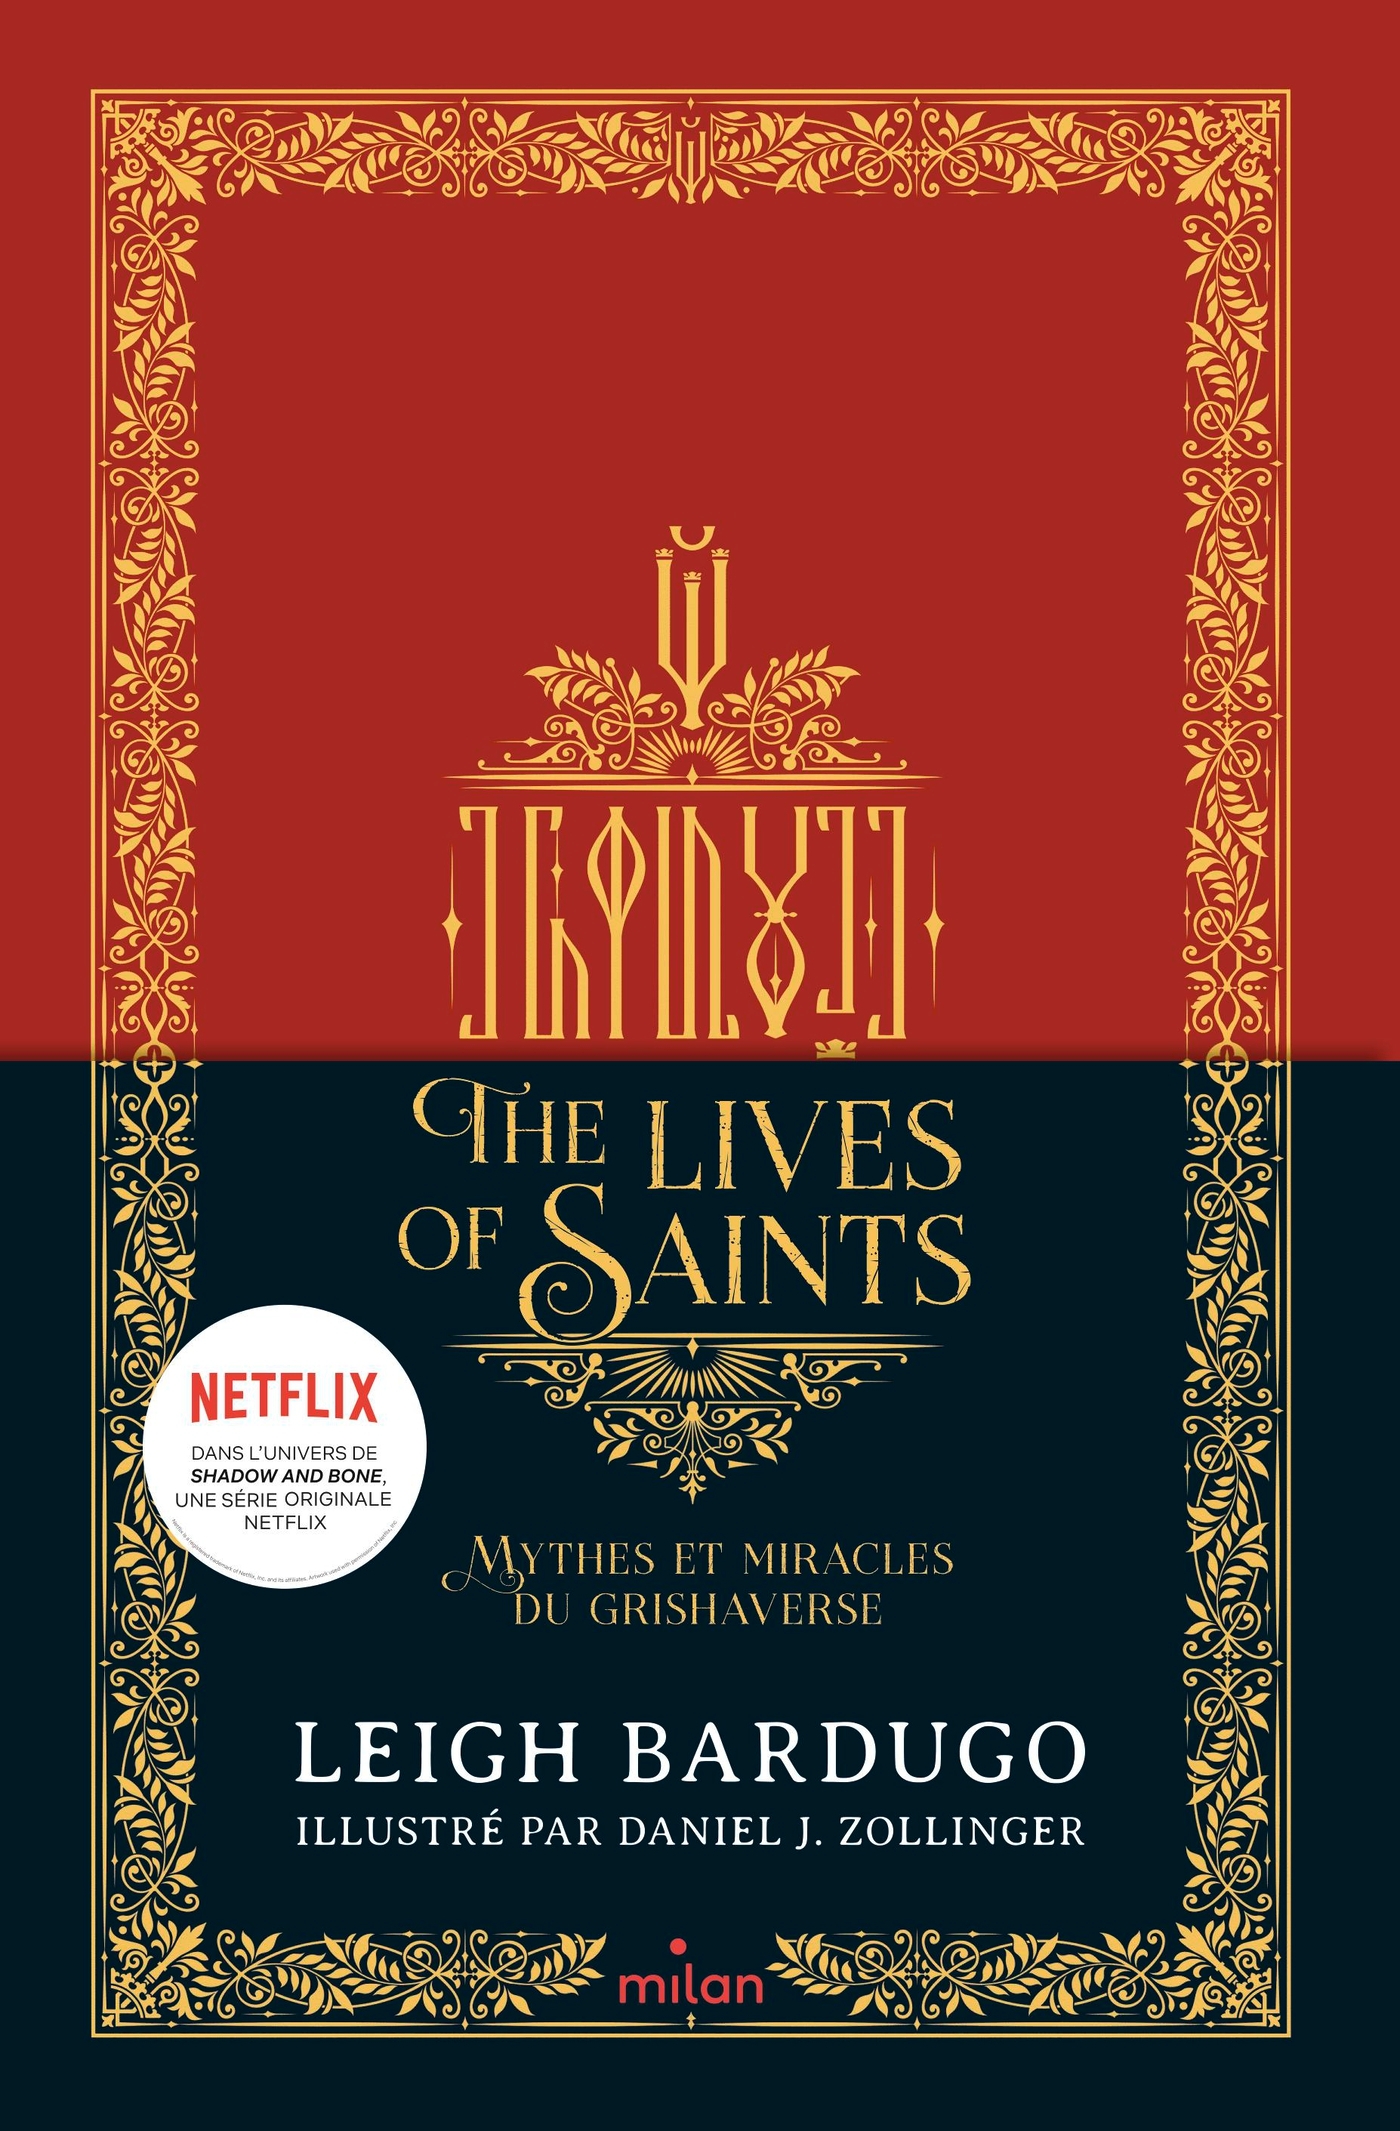 Image de l'article « Lives of Saints : Mythes et miracles du Grishaverse de LeighBardugo »